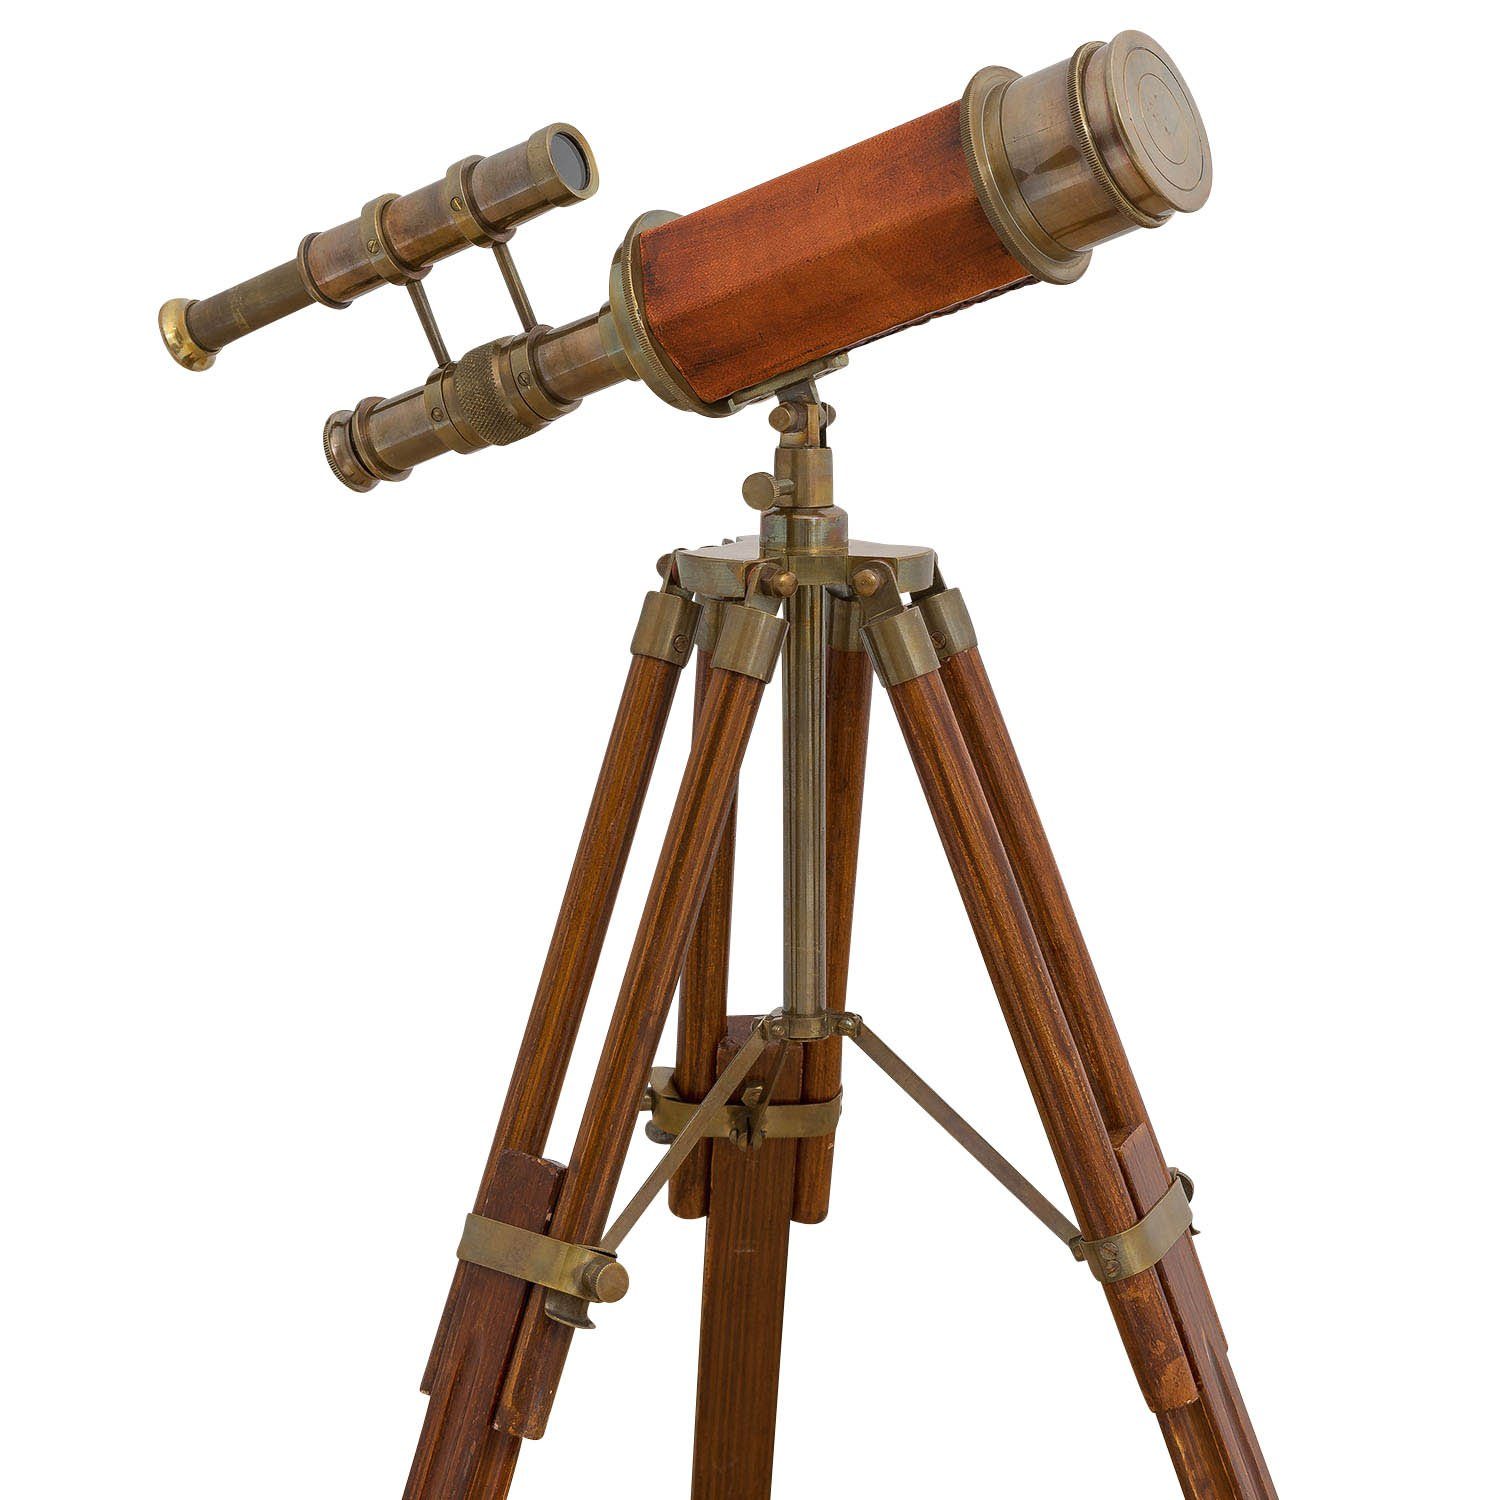 Aubaho Teleskop Doppel-Teleskop mit Holz-Stativ Fernglas Antik-Stil Fernrohr Messing